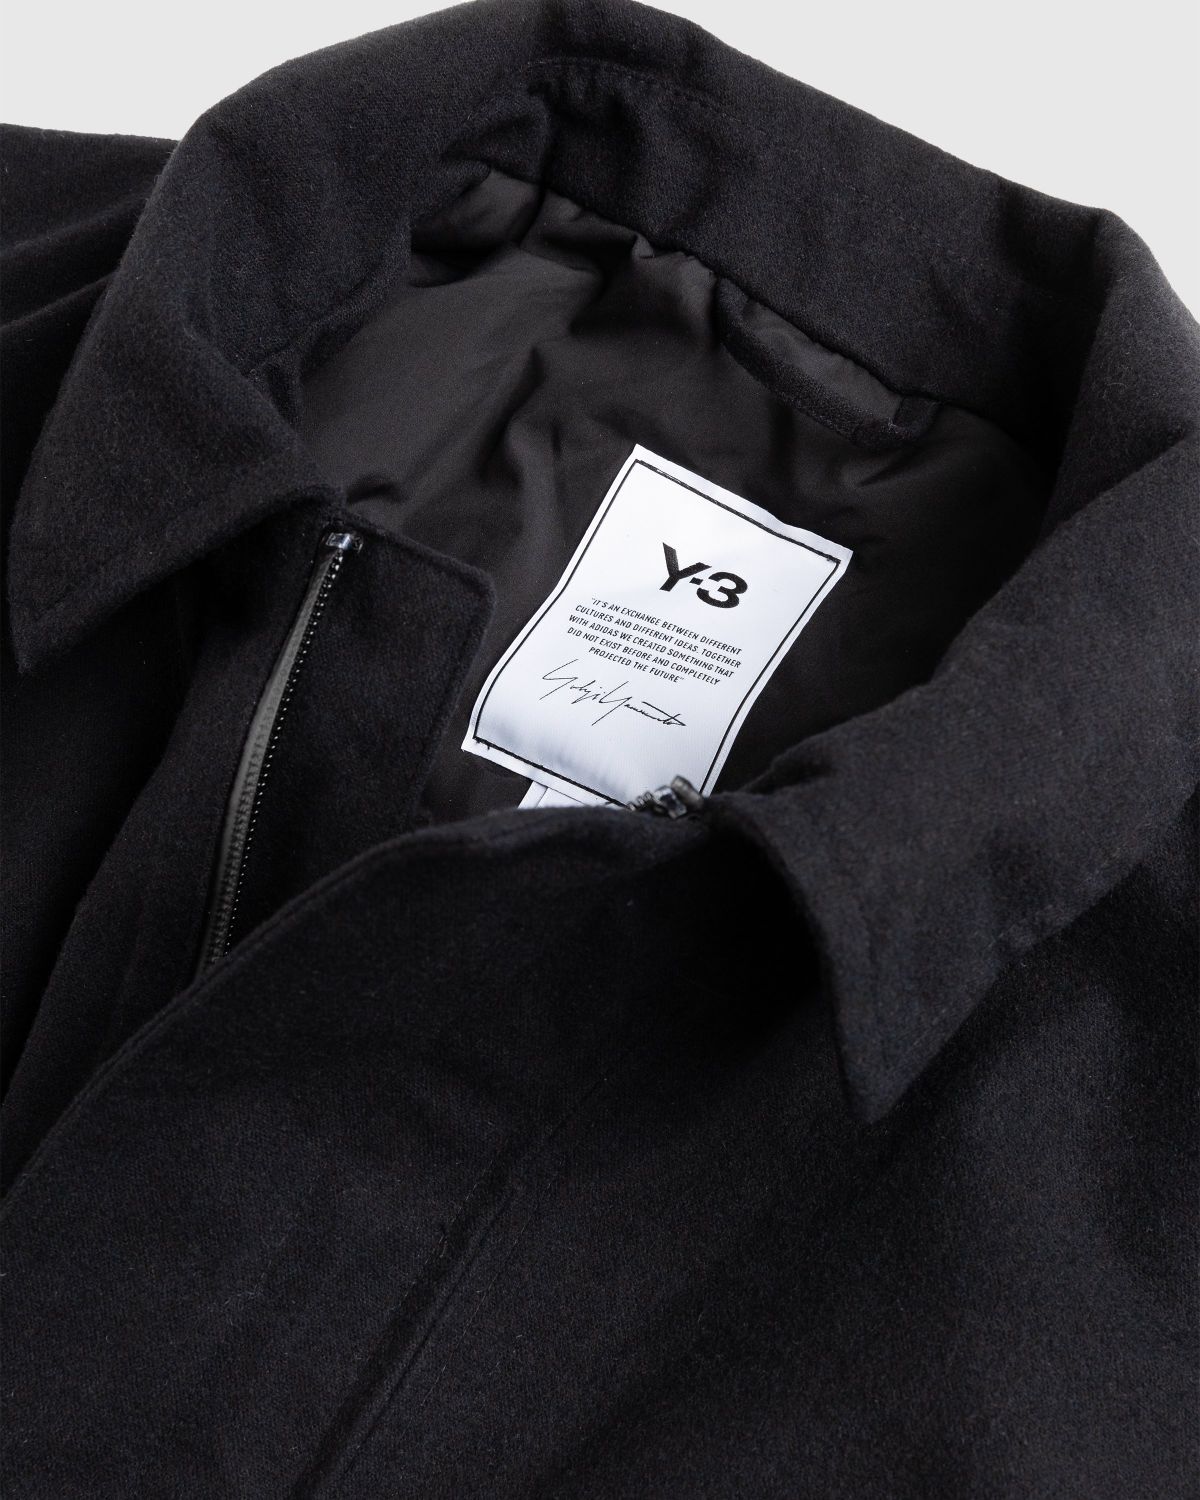 Y-3 – CL RGTX Coat - Outerwear - Black - Image 4